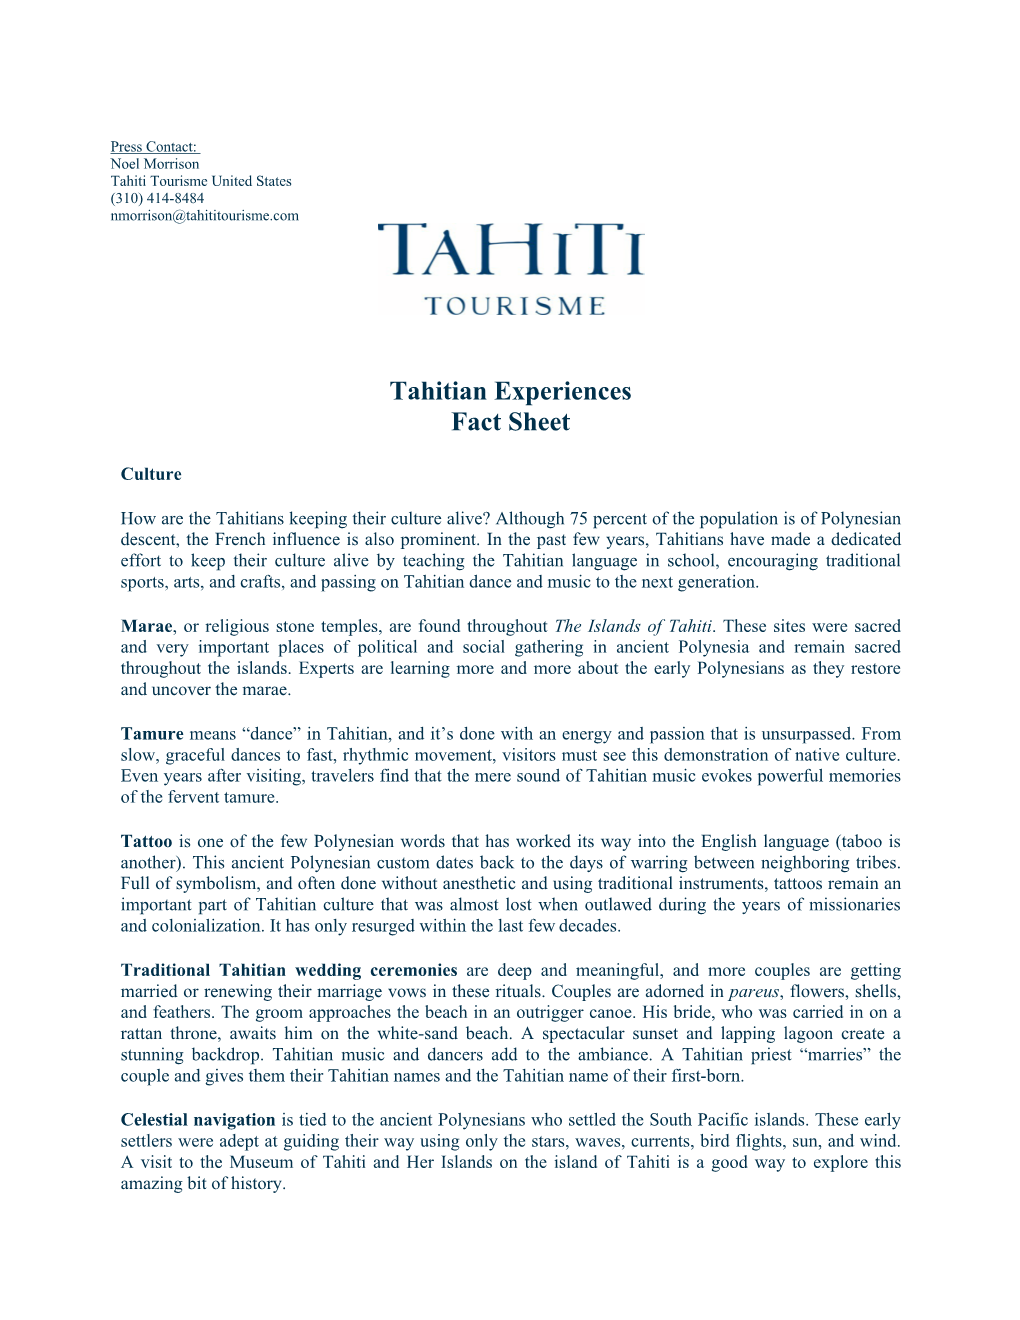 Tahitian Experiences Fact Sheet